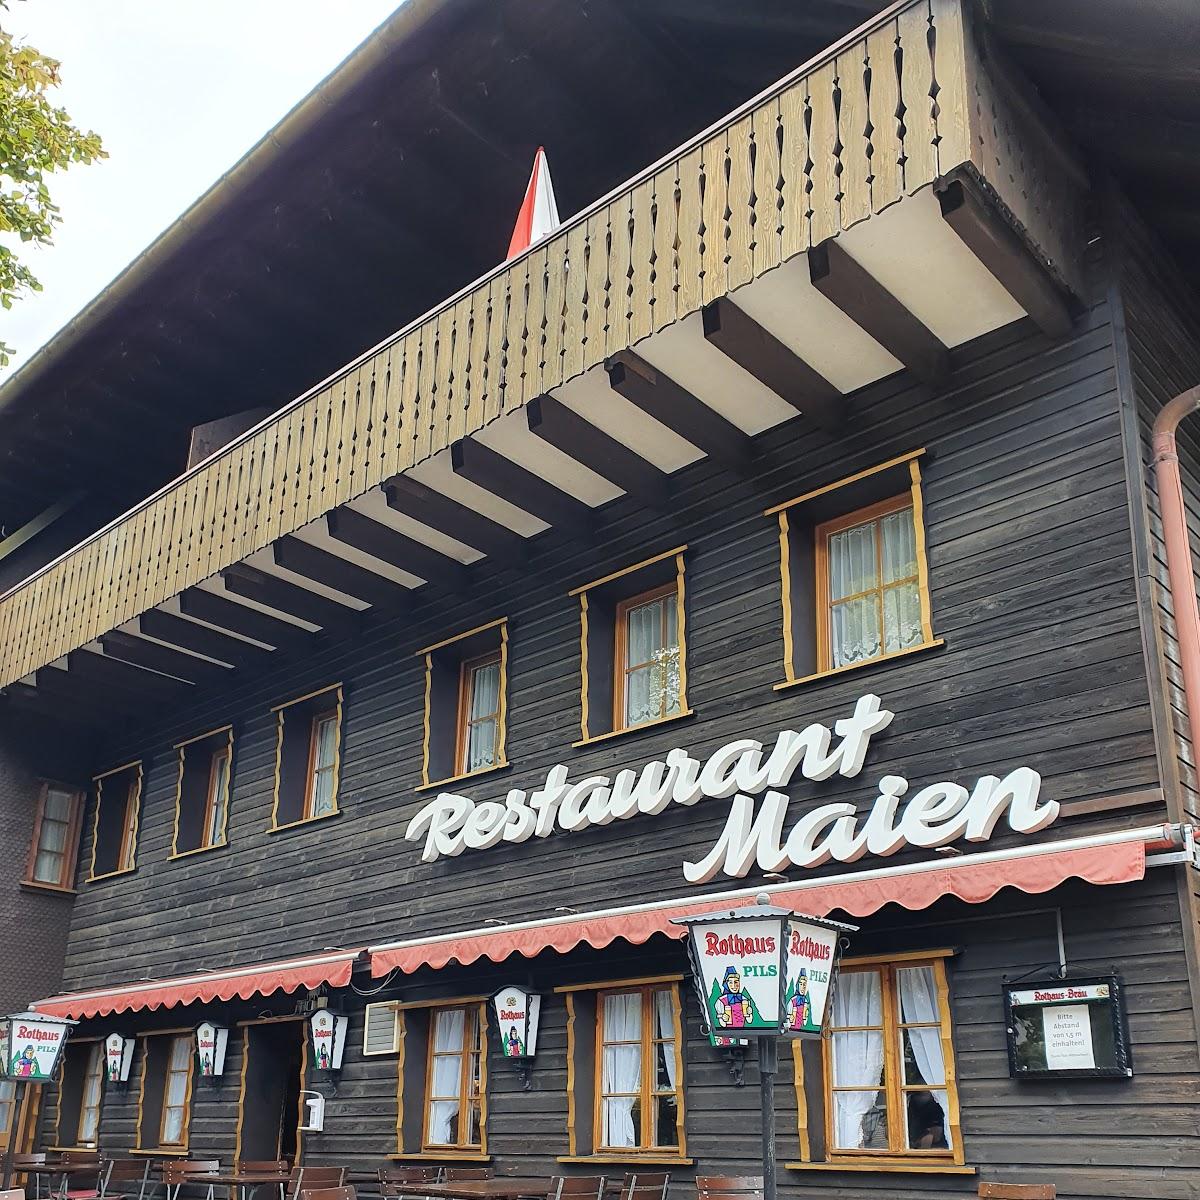 Restaurant "Restaurant Maien" in Todtmoos